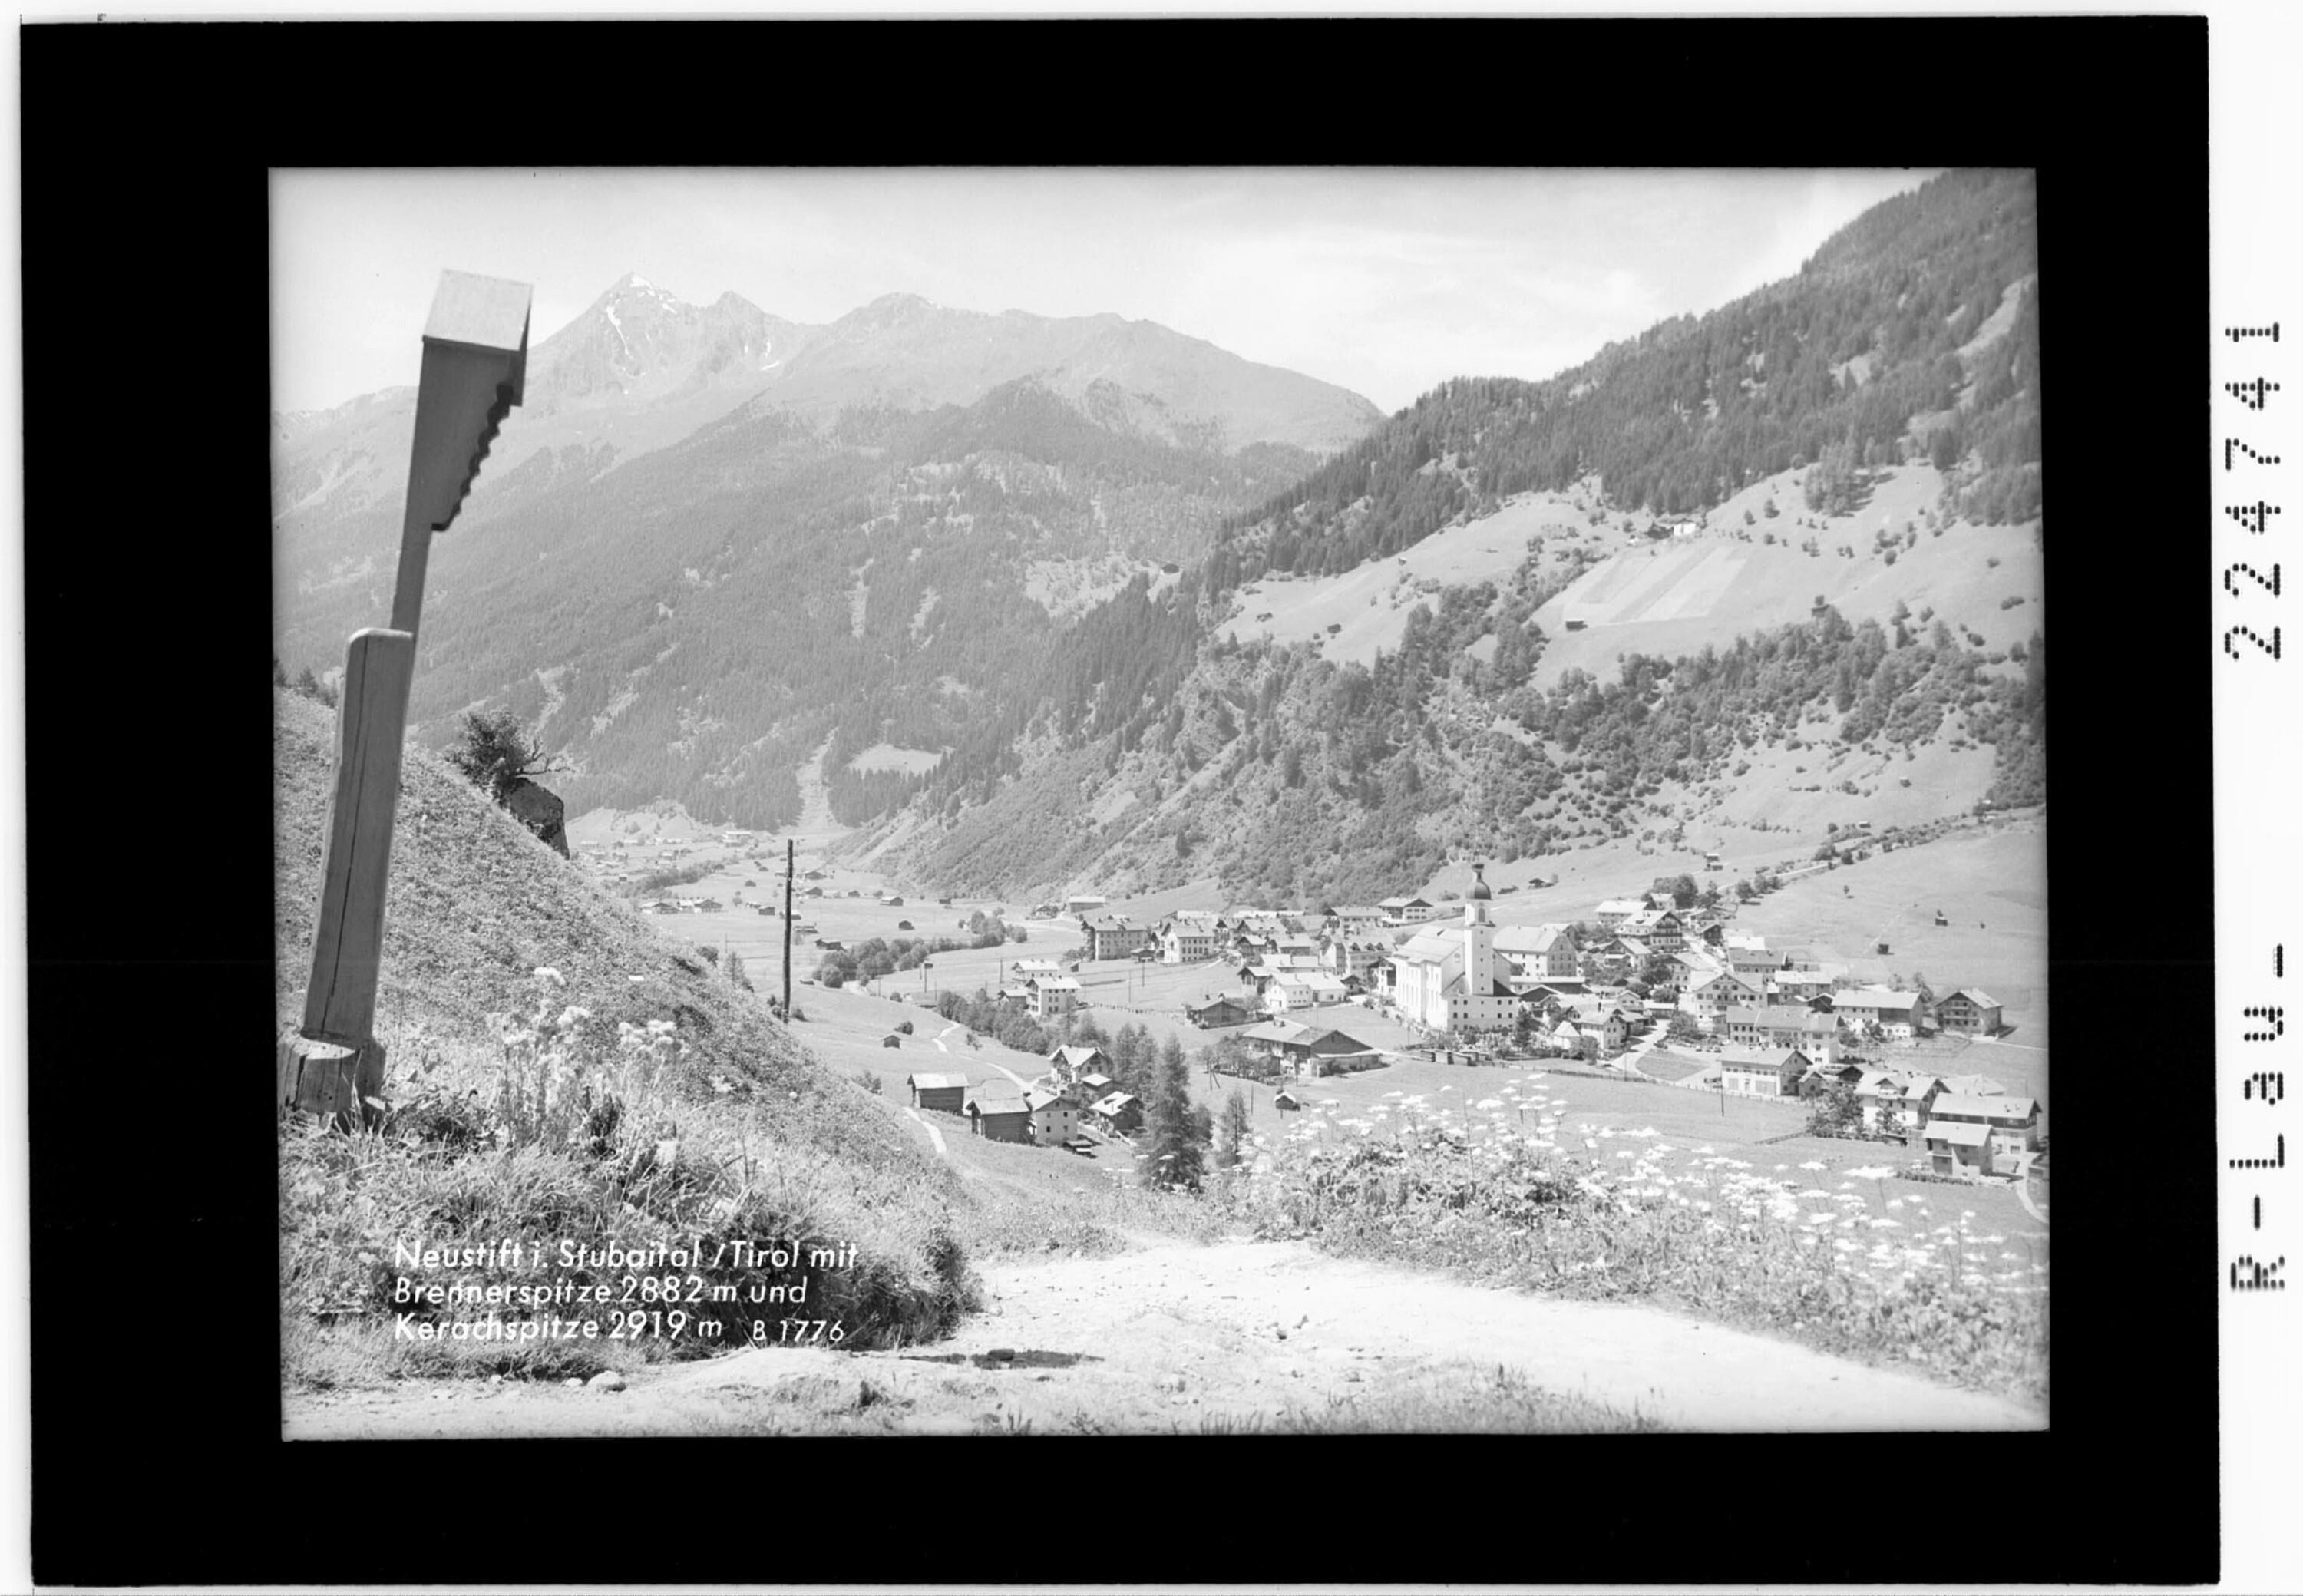 Neustift im Stubaital / Tirol mit Brennerspitze 2882 m und Kerachspitze 2919 m></div>


    <hr>
    <div class=